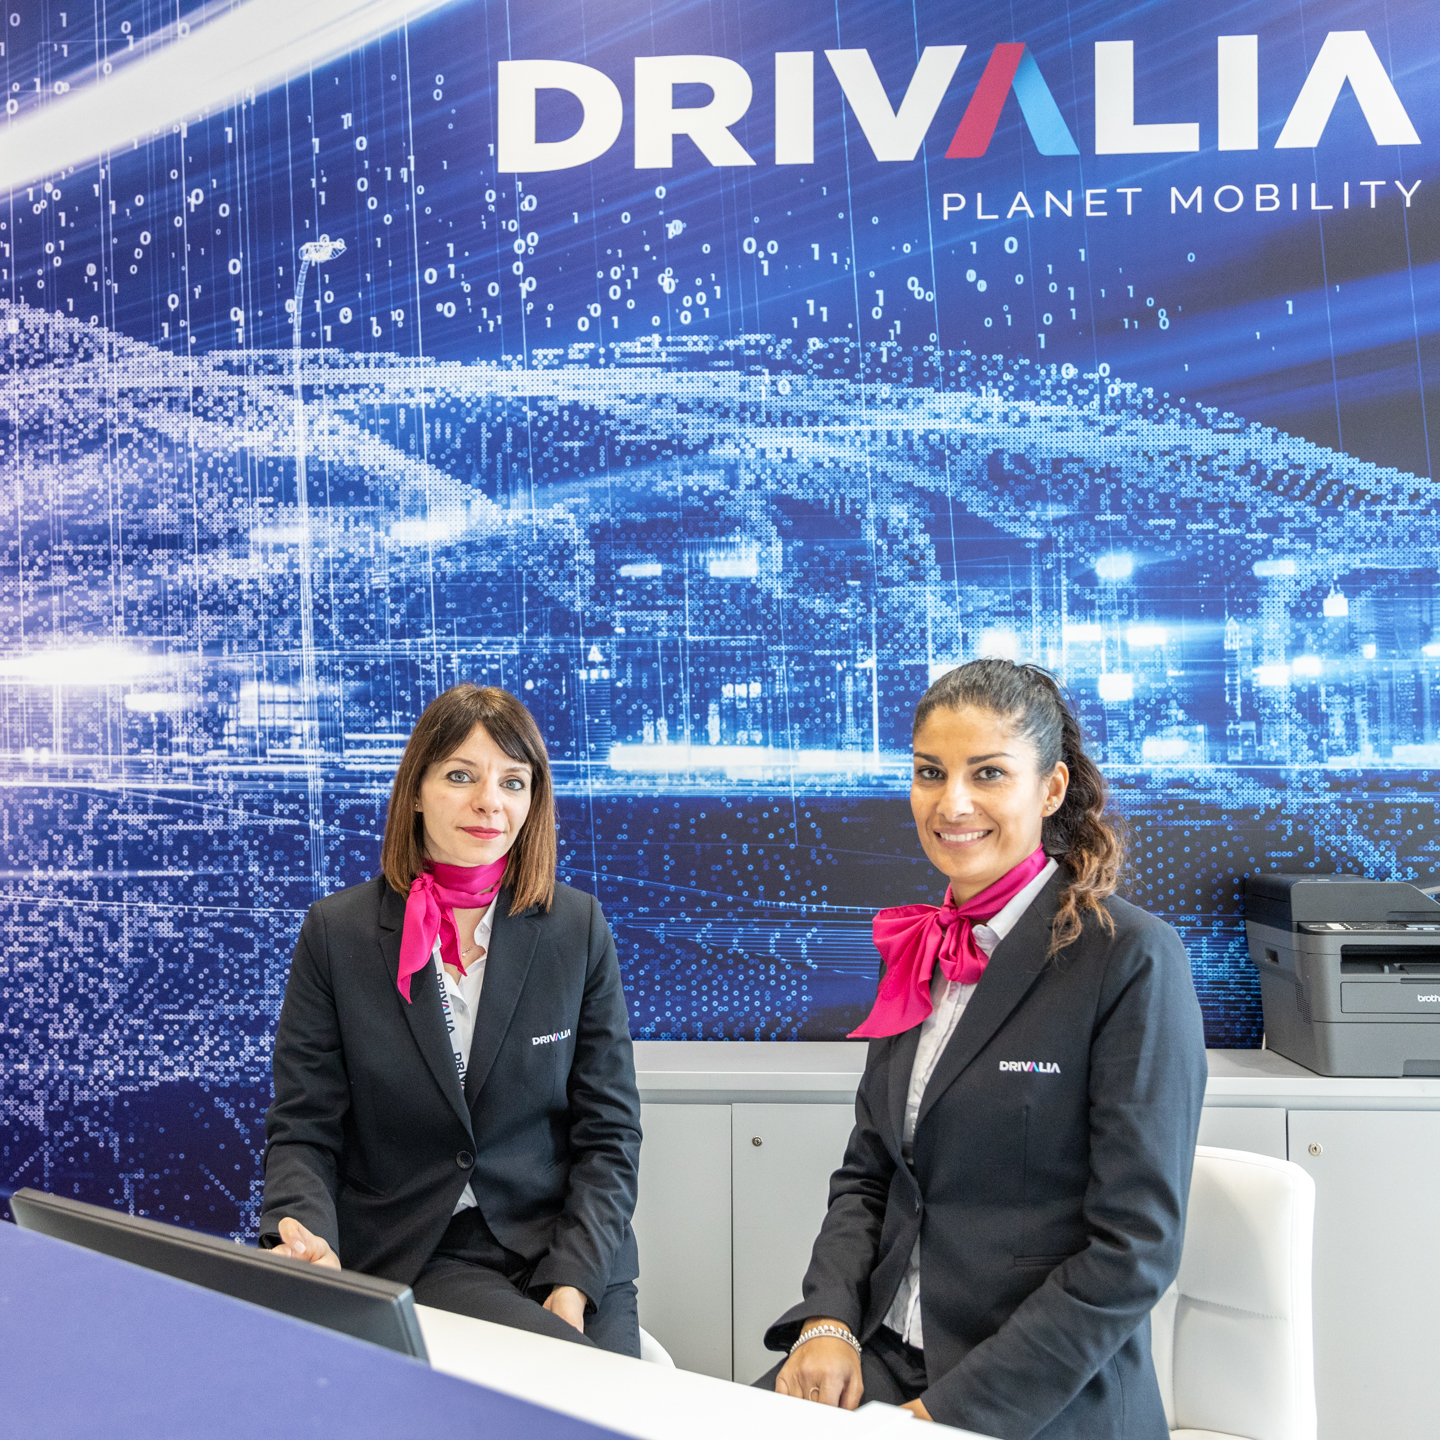 Drivalia Mobility Store - Milano Ripamonti - Leasys CarCloud, il primo  servizio di noleggio auto in abbonamento, si arricchisce di uno dei marchi  automobilistici più prestigiosi al mondo grazie al lancio della